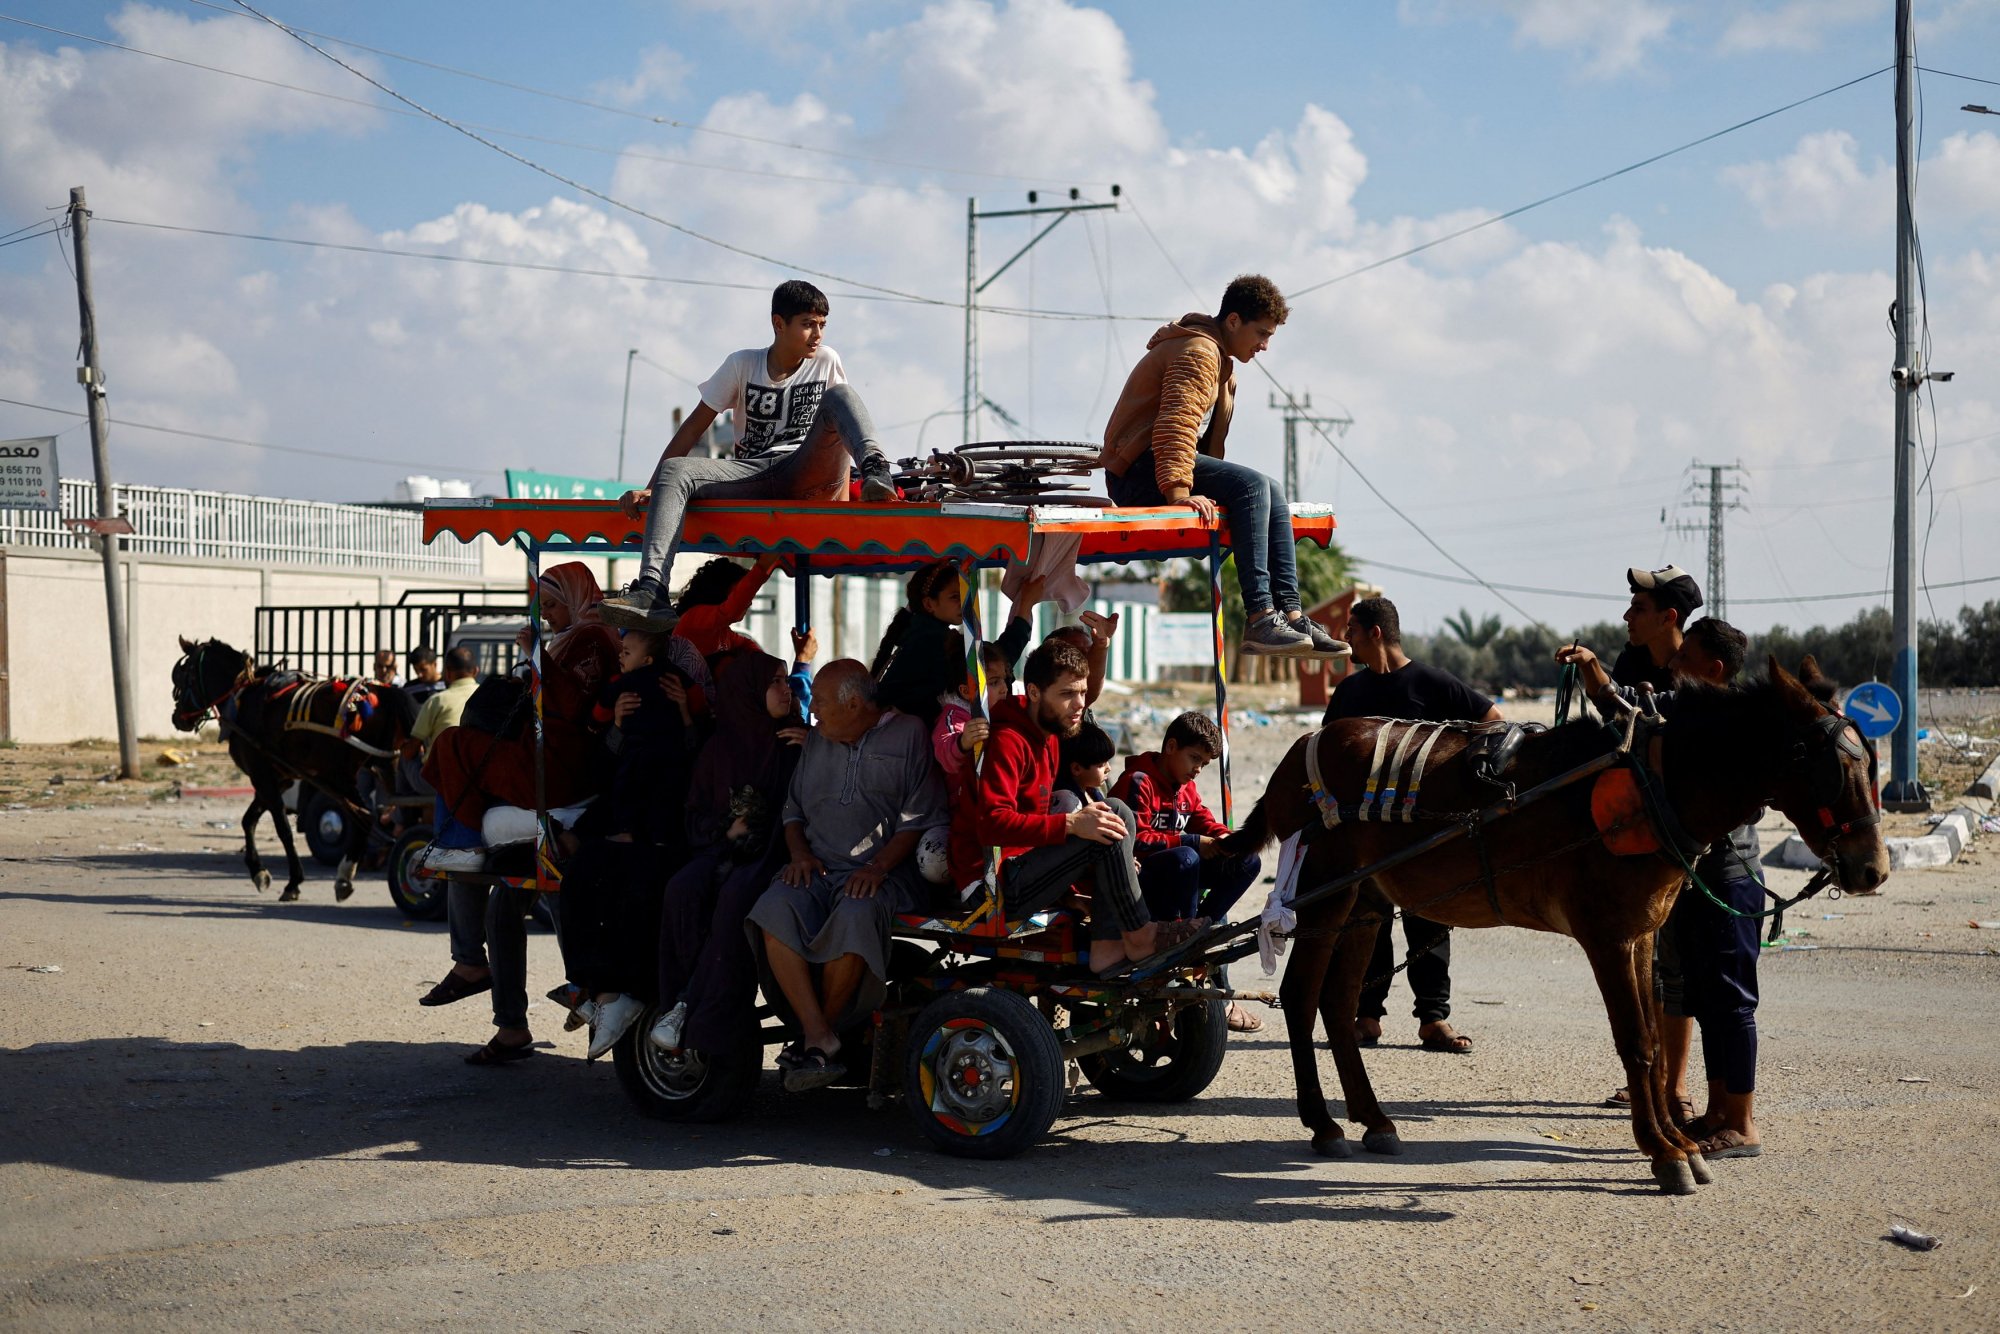 Γάζα: «Αν σου έπεφτε κάτι και έσκυβες, θα σε πυροβολούσαν» - Παλαιστίνιοι περιγράφουν τον εκτοπισμό τους